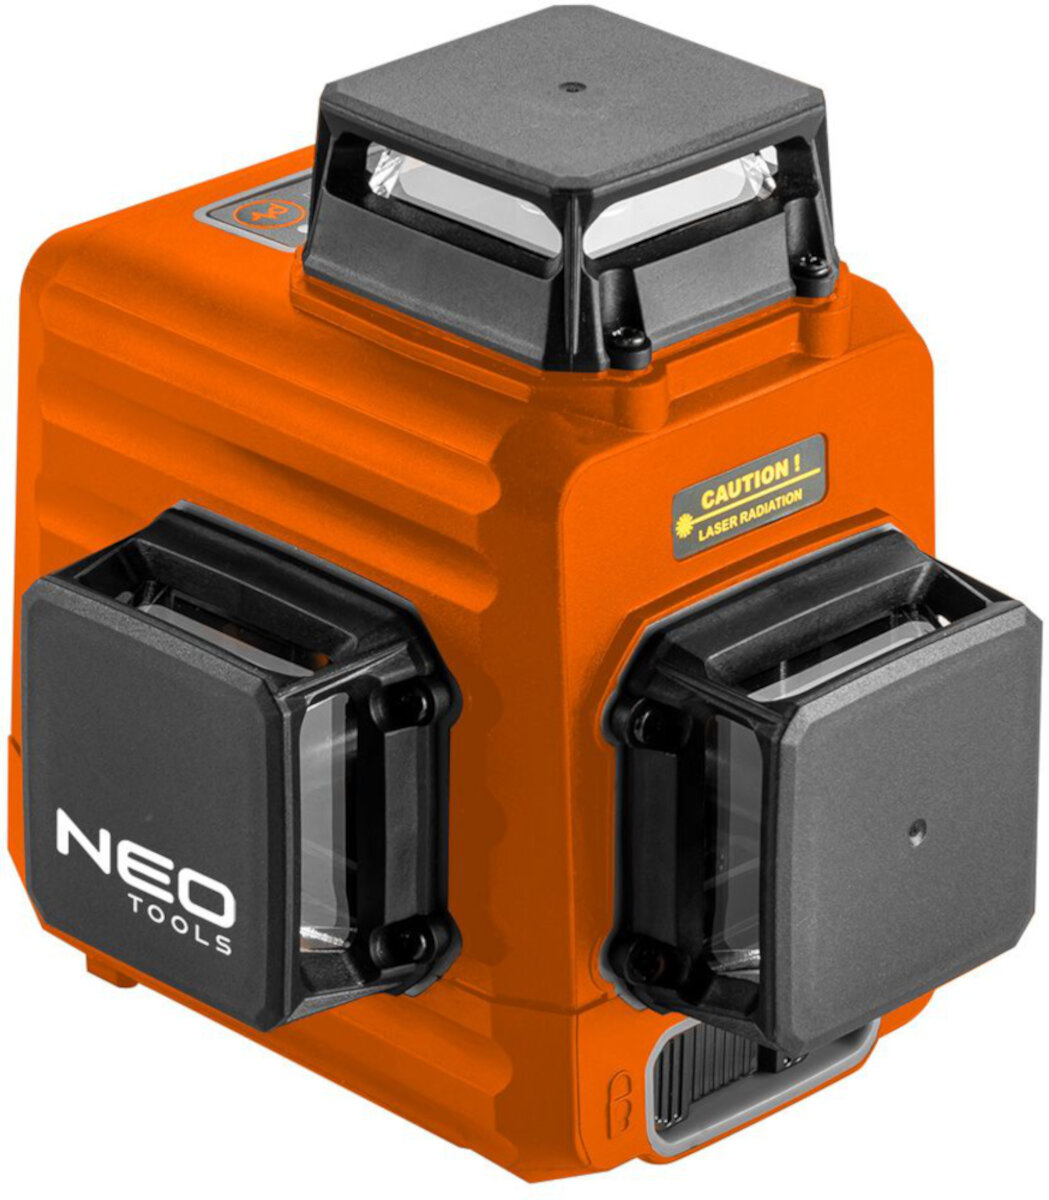 NEO 75-104 Laser obrotowy - niskie ceny i opinie w Media Expert